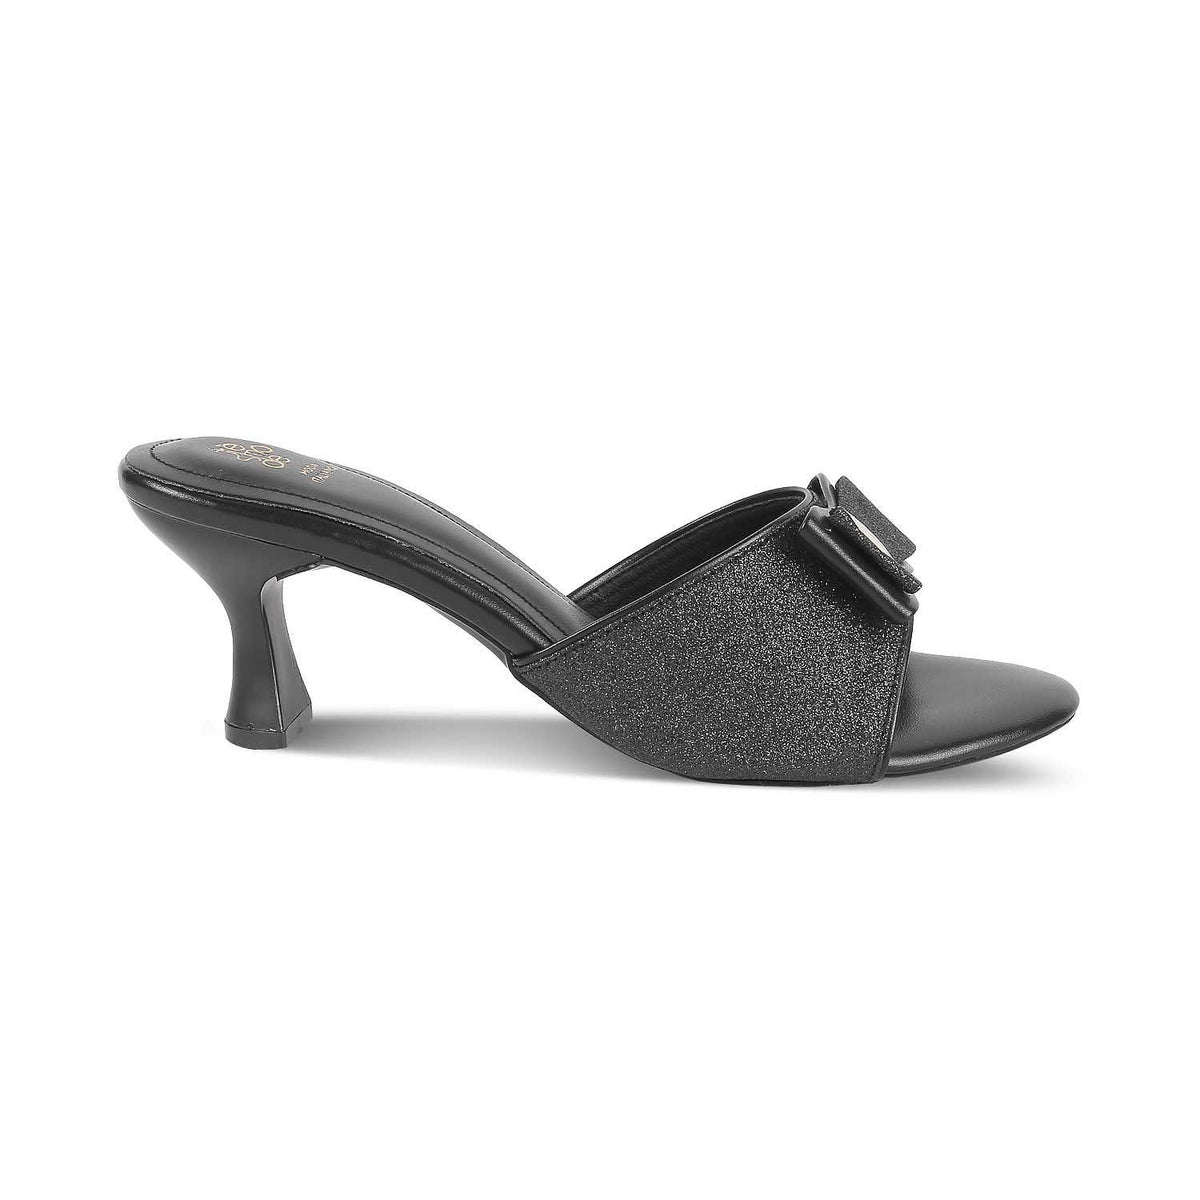 The Gamos Black Women's Dress Heel Sandals Tresmode - Tresmode